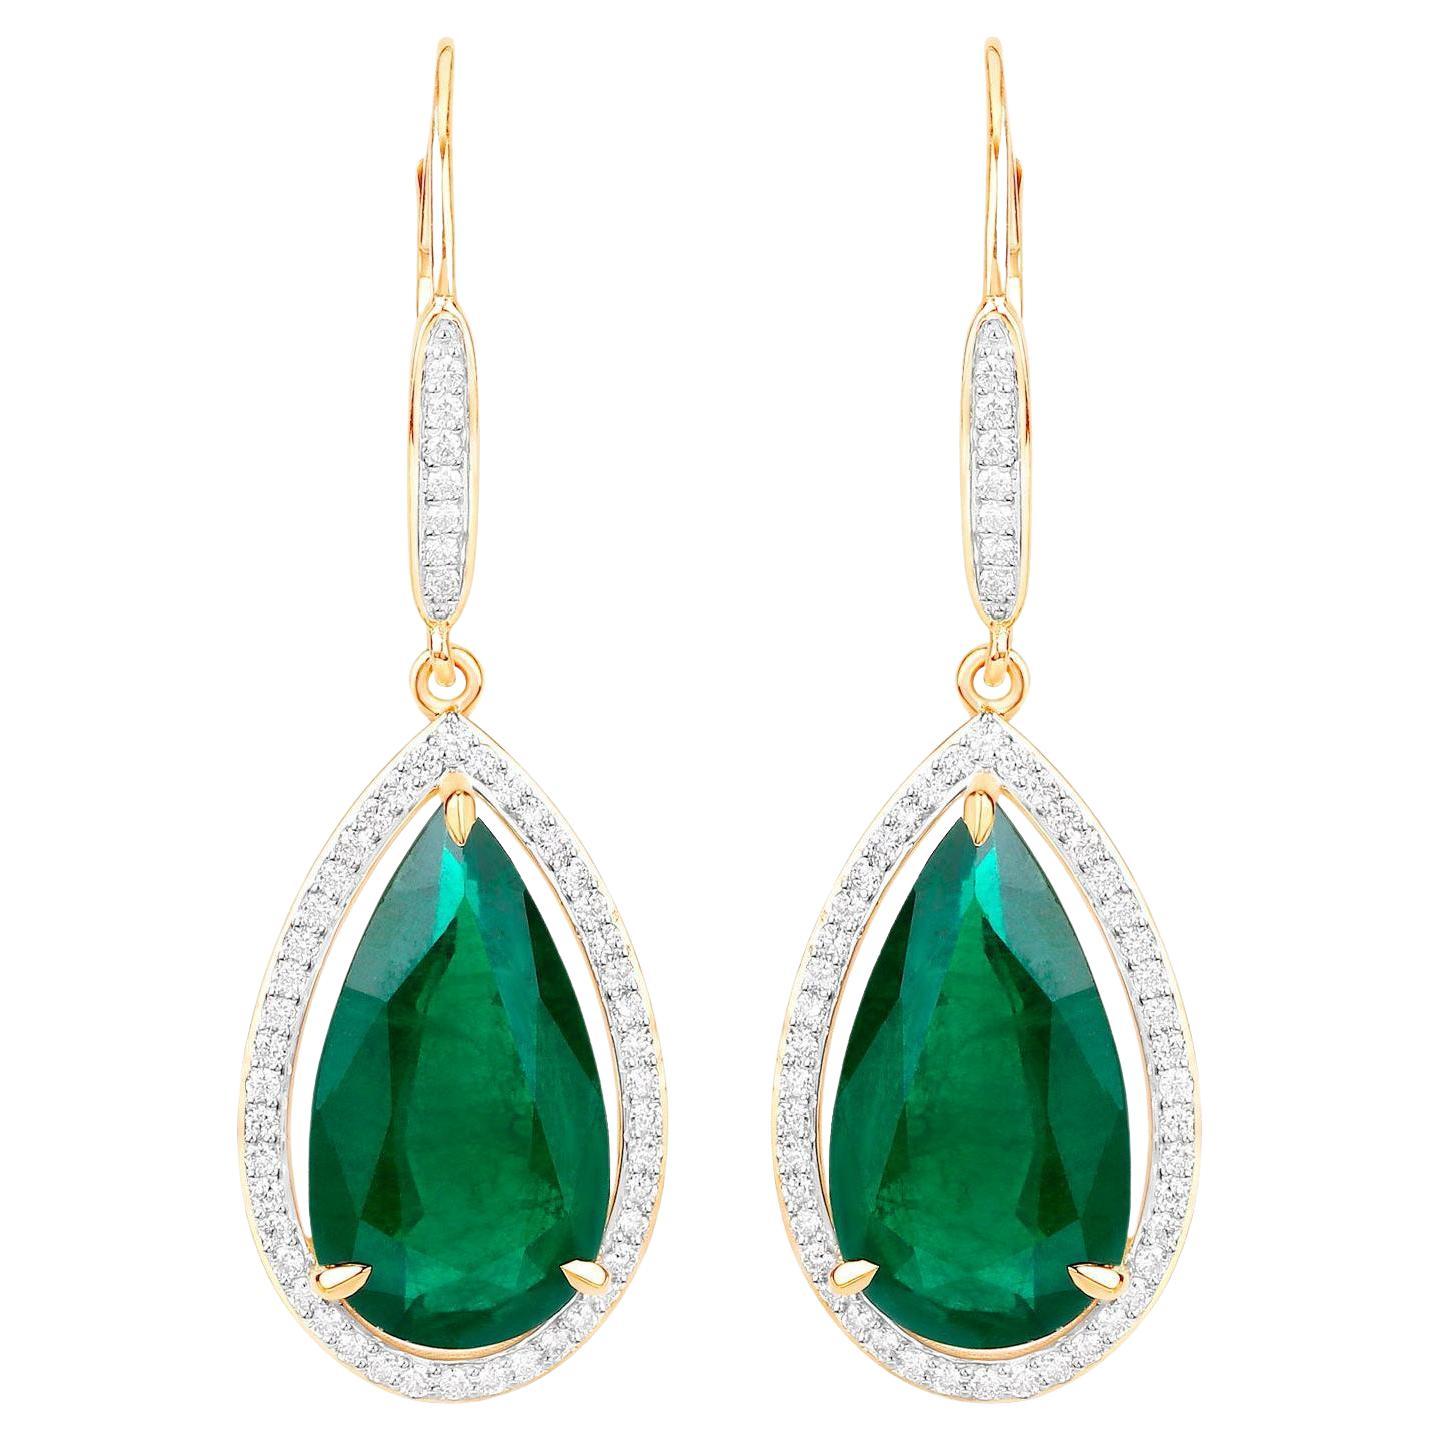 IGI Certified Zambian Emerald Dangle Earrings Diamonds 16.15 Carats 14K Yellow G For Sale